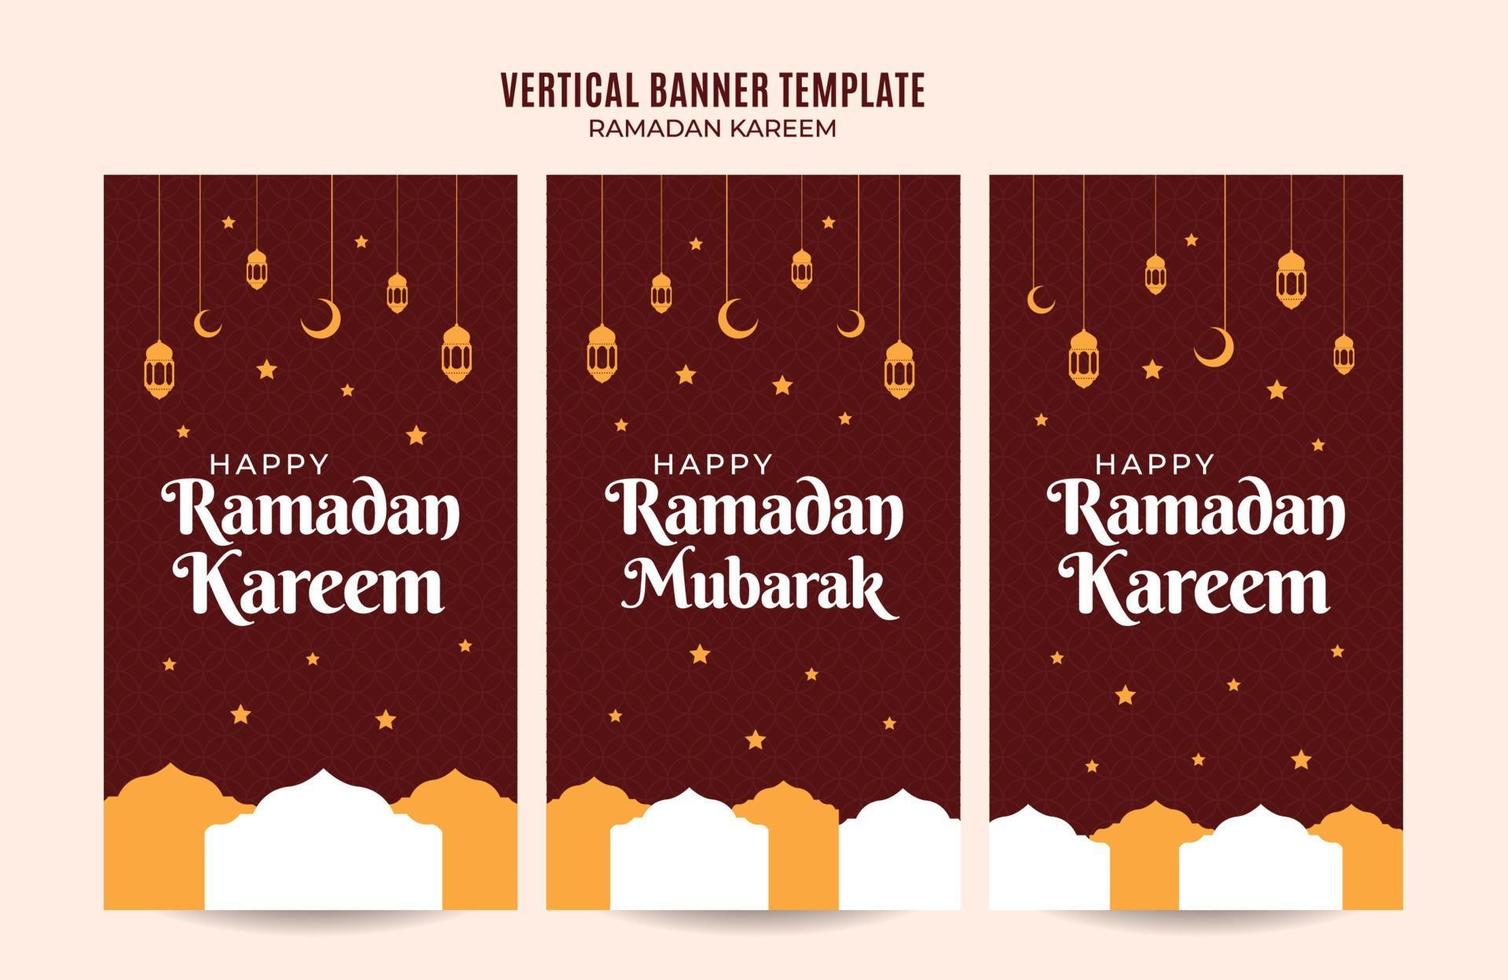 ramadan kareem vertikale webbannerfläche und hintergrund vektor